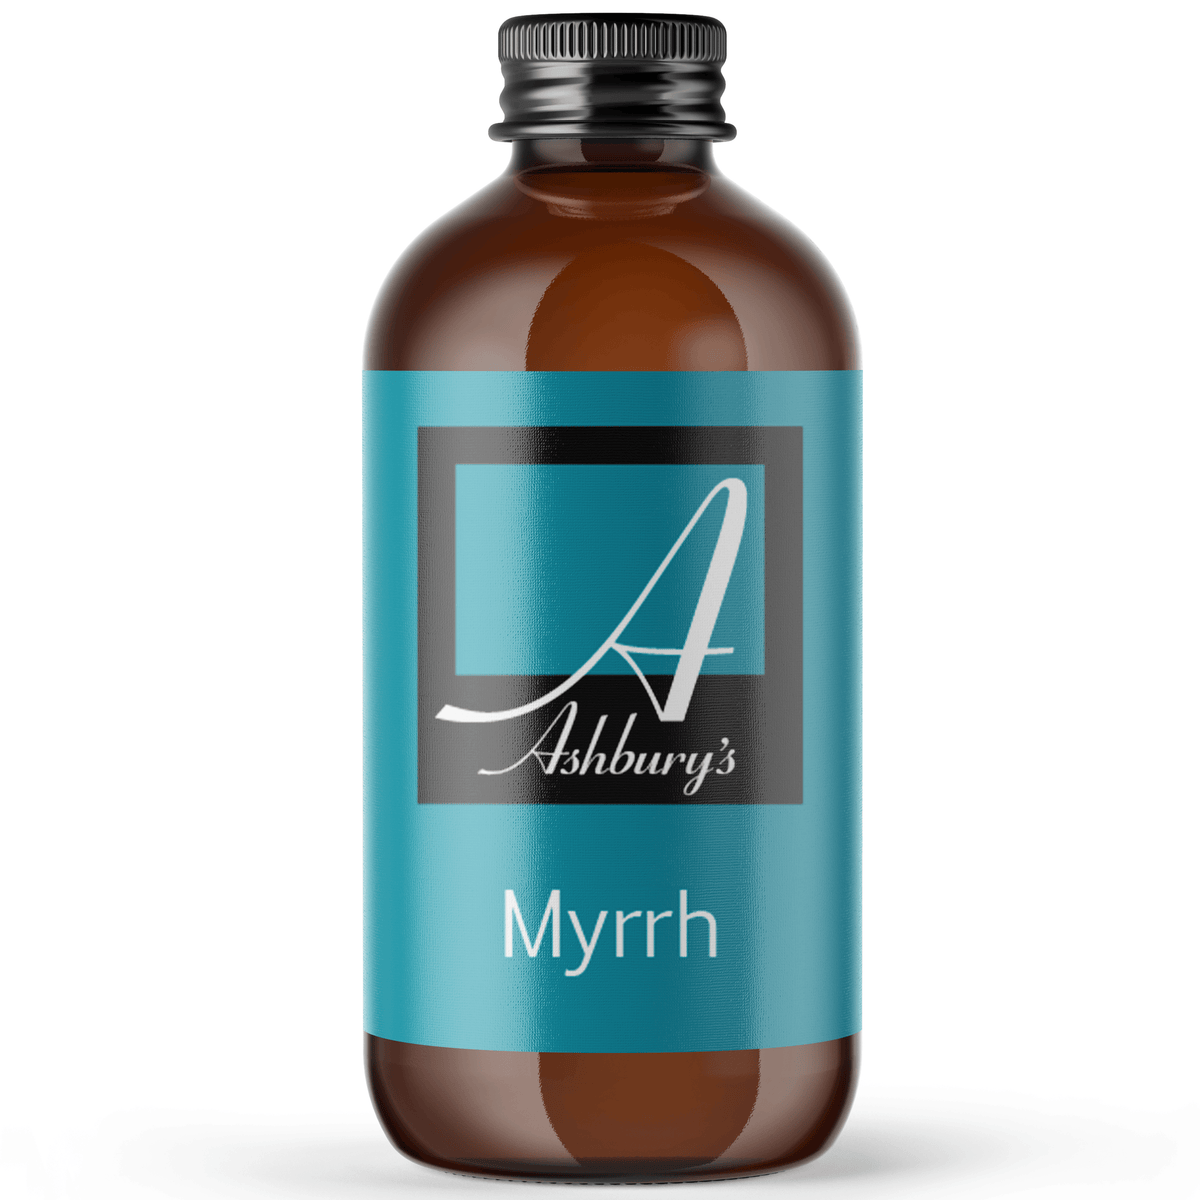 Myrrh (Commiphora myrrha)